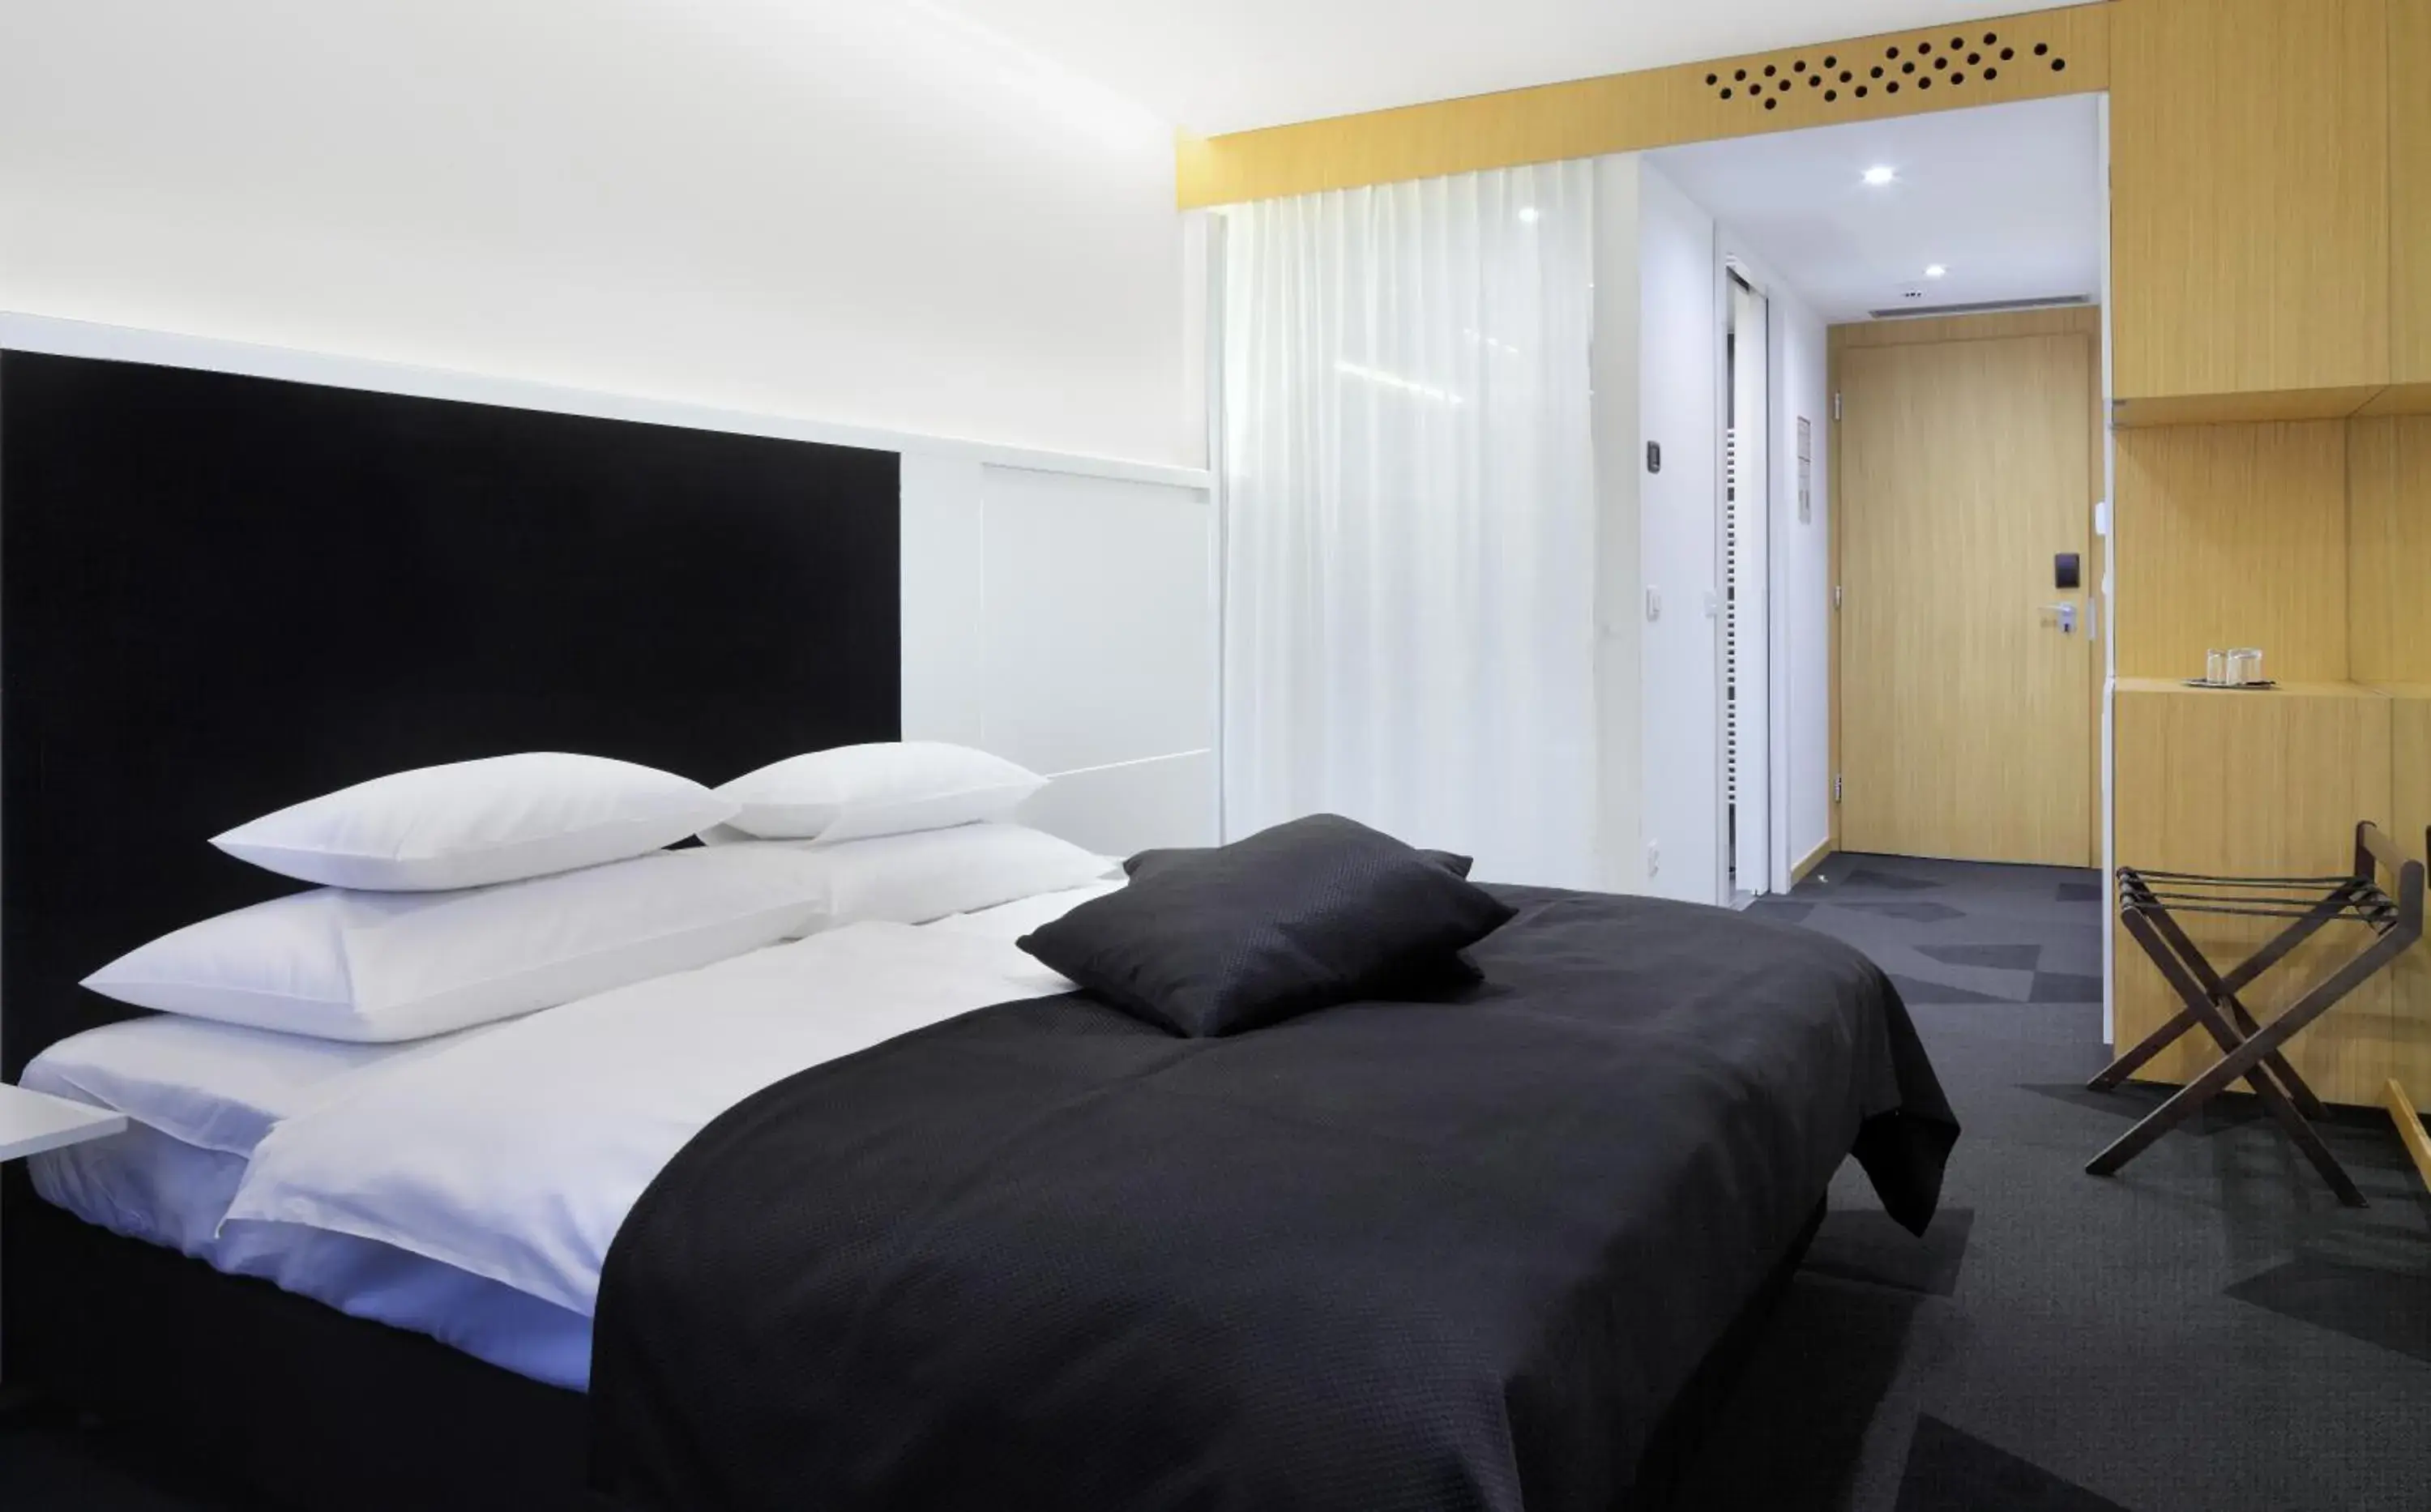 Bed in Hotel Nox